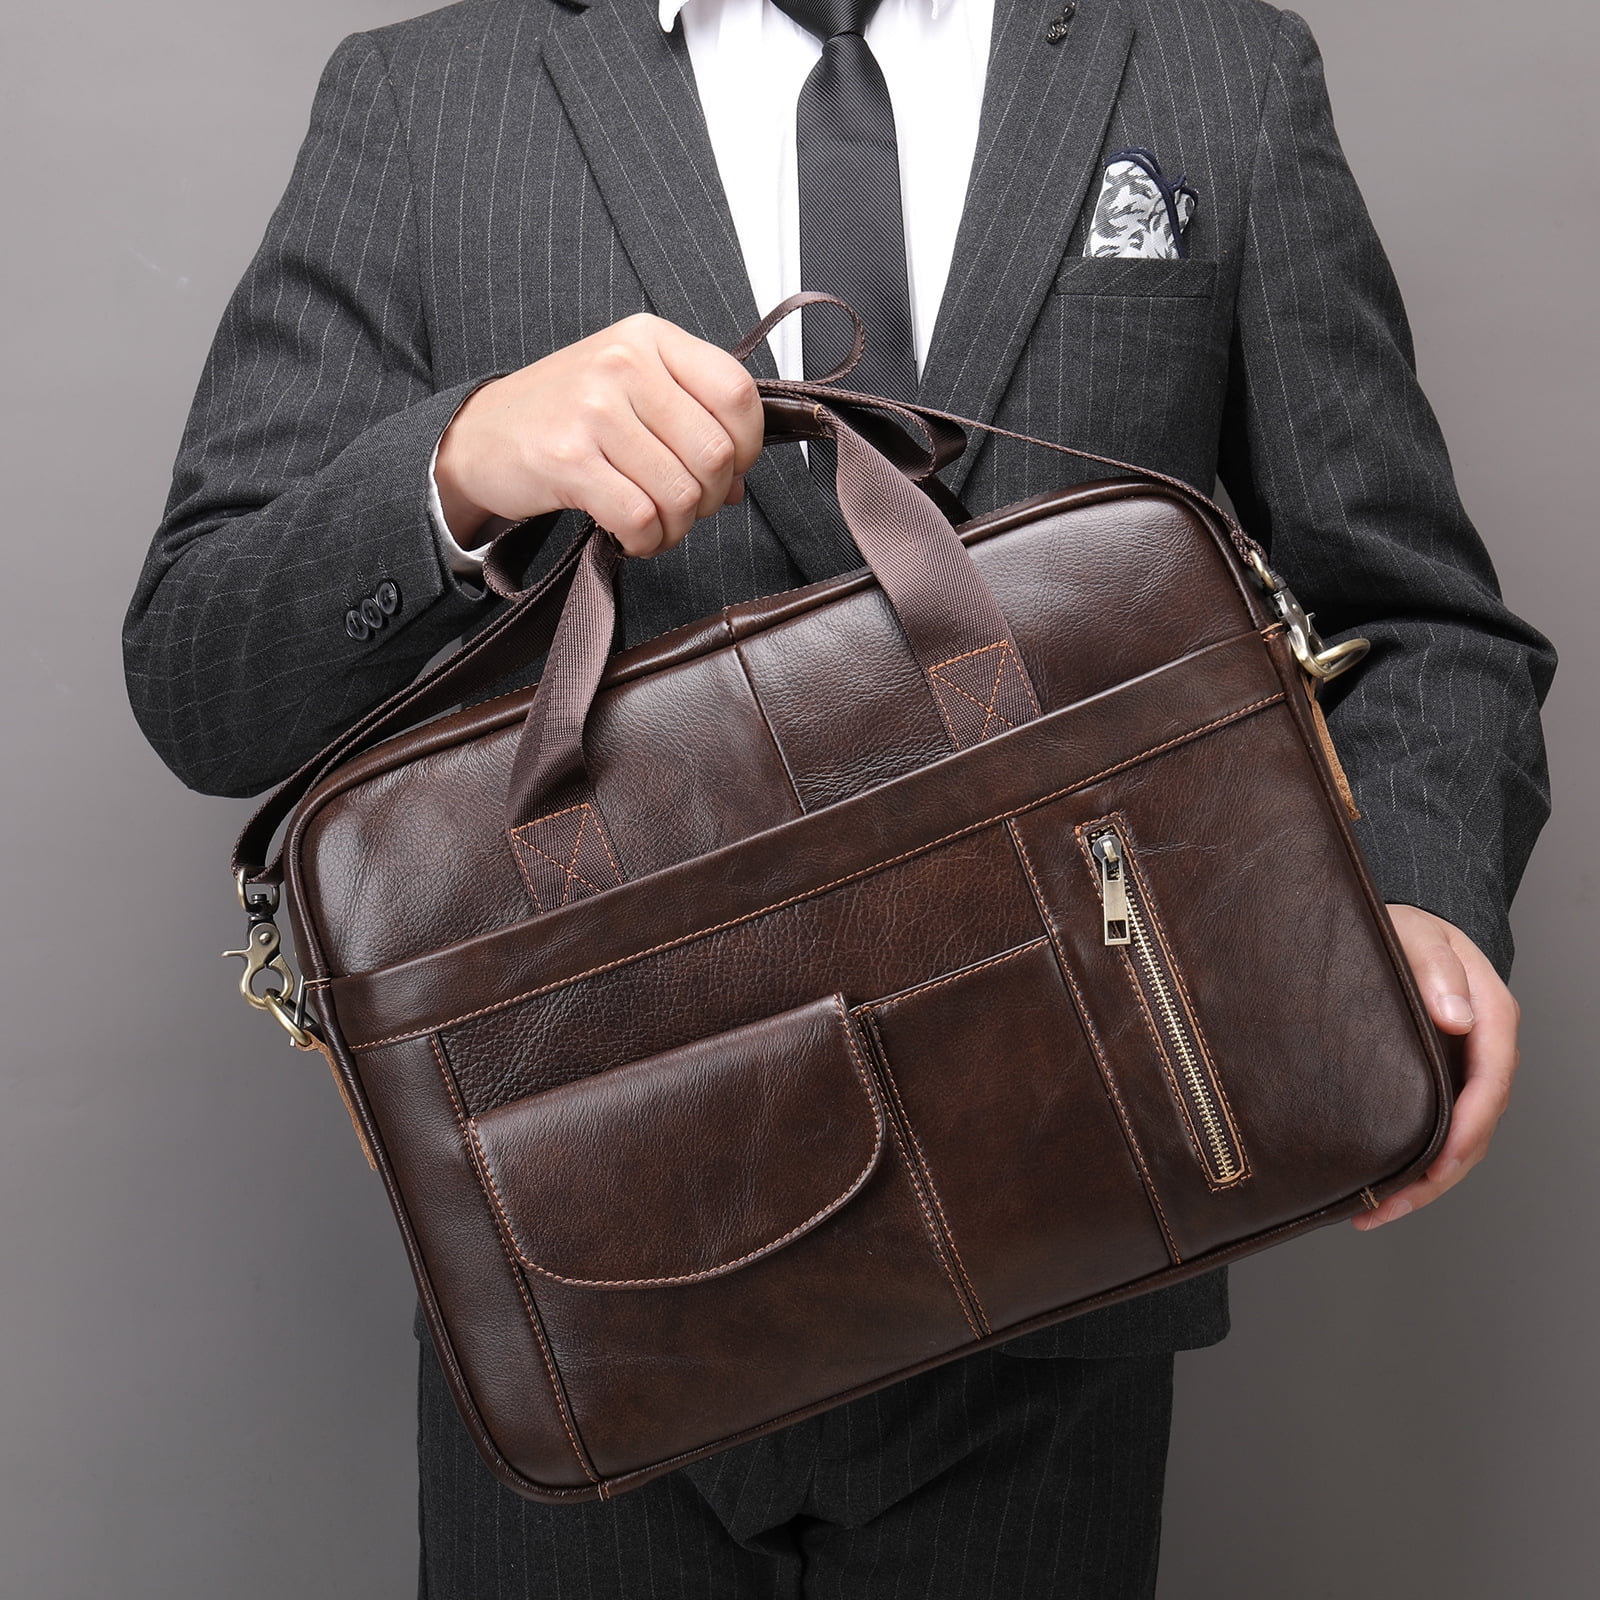 Uni College School Bag, Genuine Brown Leather Messenger Bag, Shoulder  Laptop Briefcase Rustic Vintage Bag Handmade Office Bag 